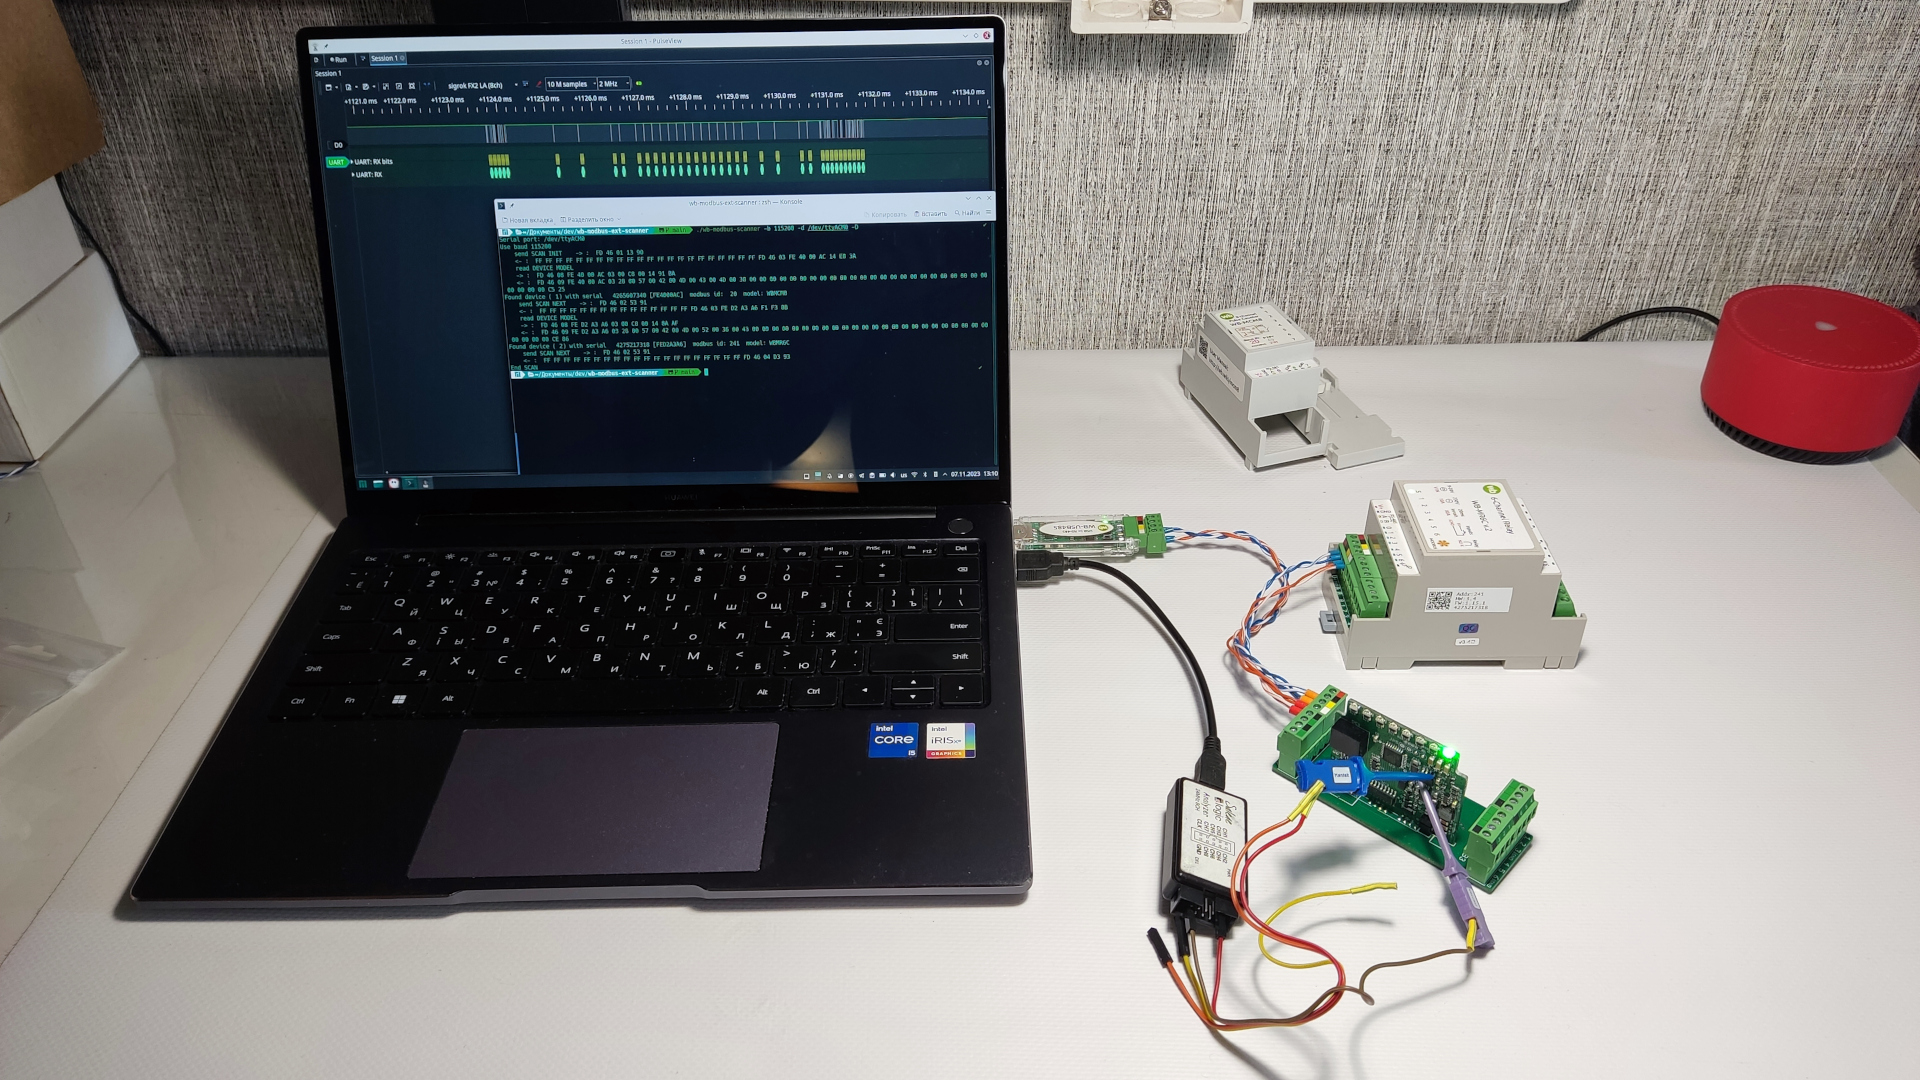 Стенд: ноутбук с Linux, преобразователь WB-USB485, логический анализатор и два Modbus-устройства Wiren Board с поддержкой расширения Быстрый Modbus